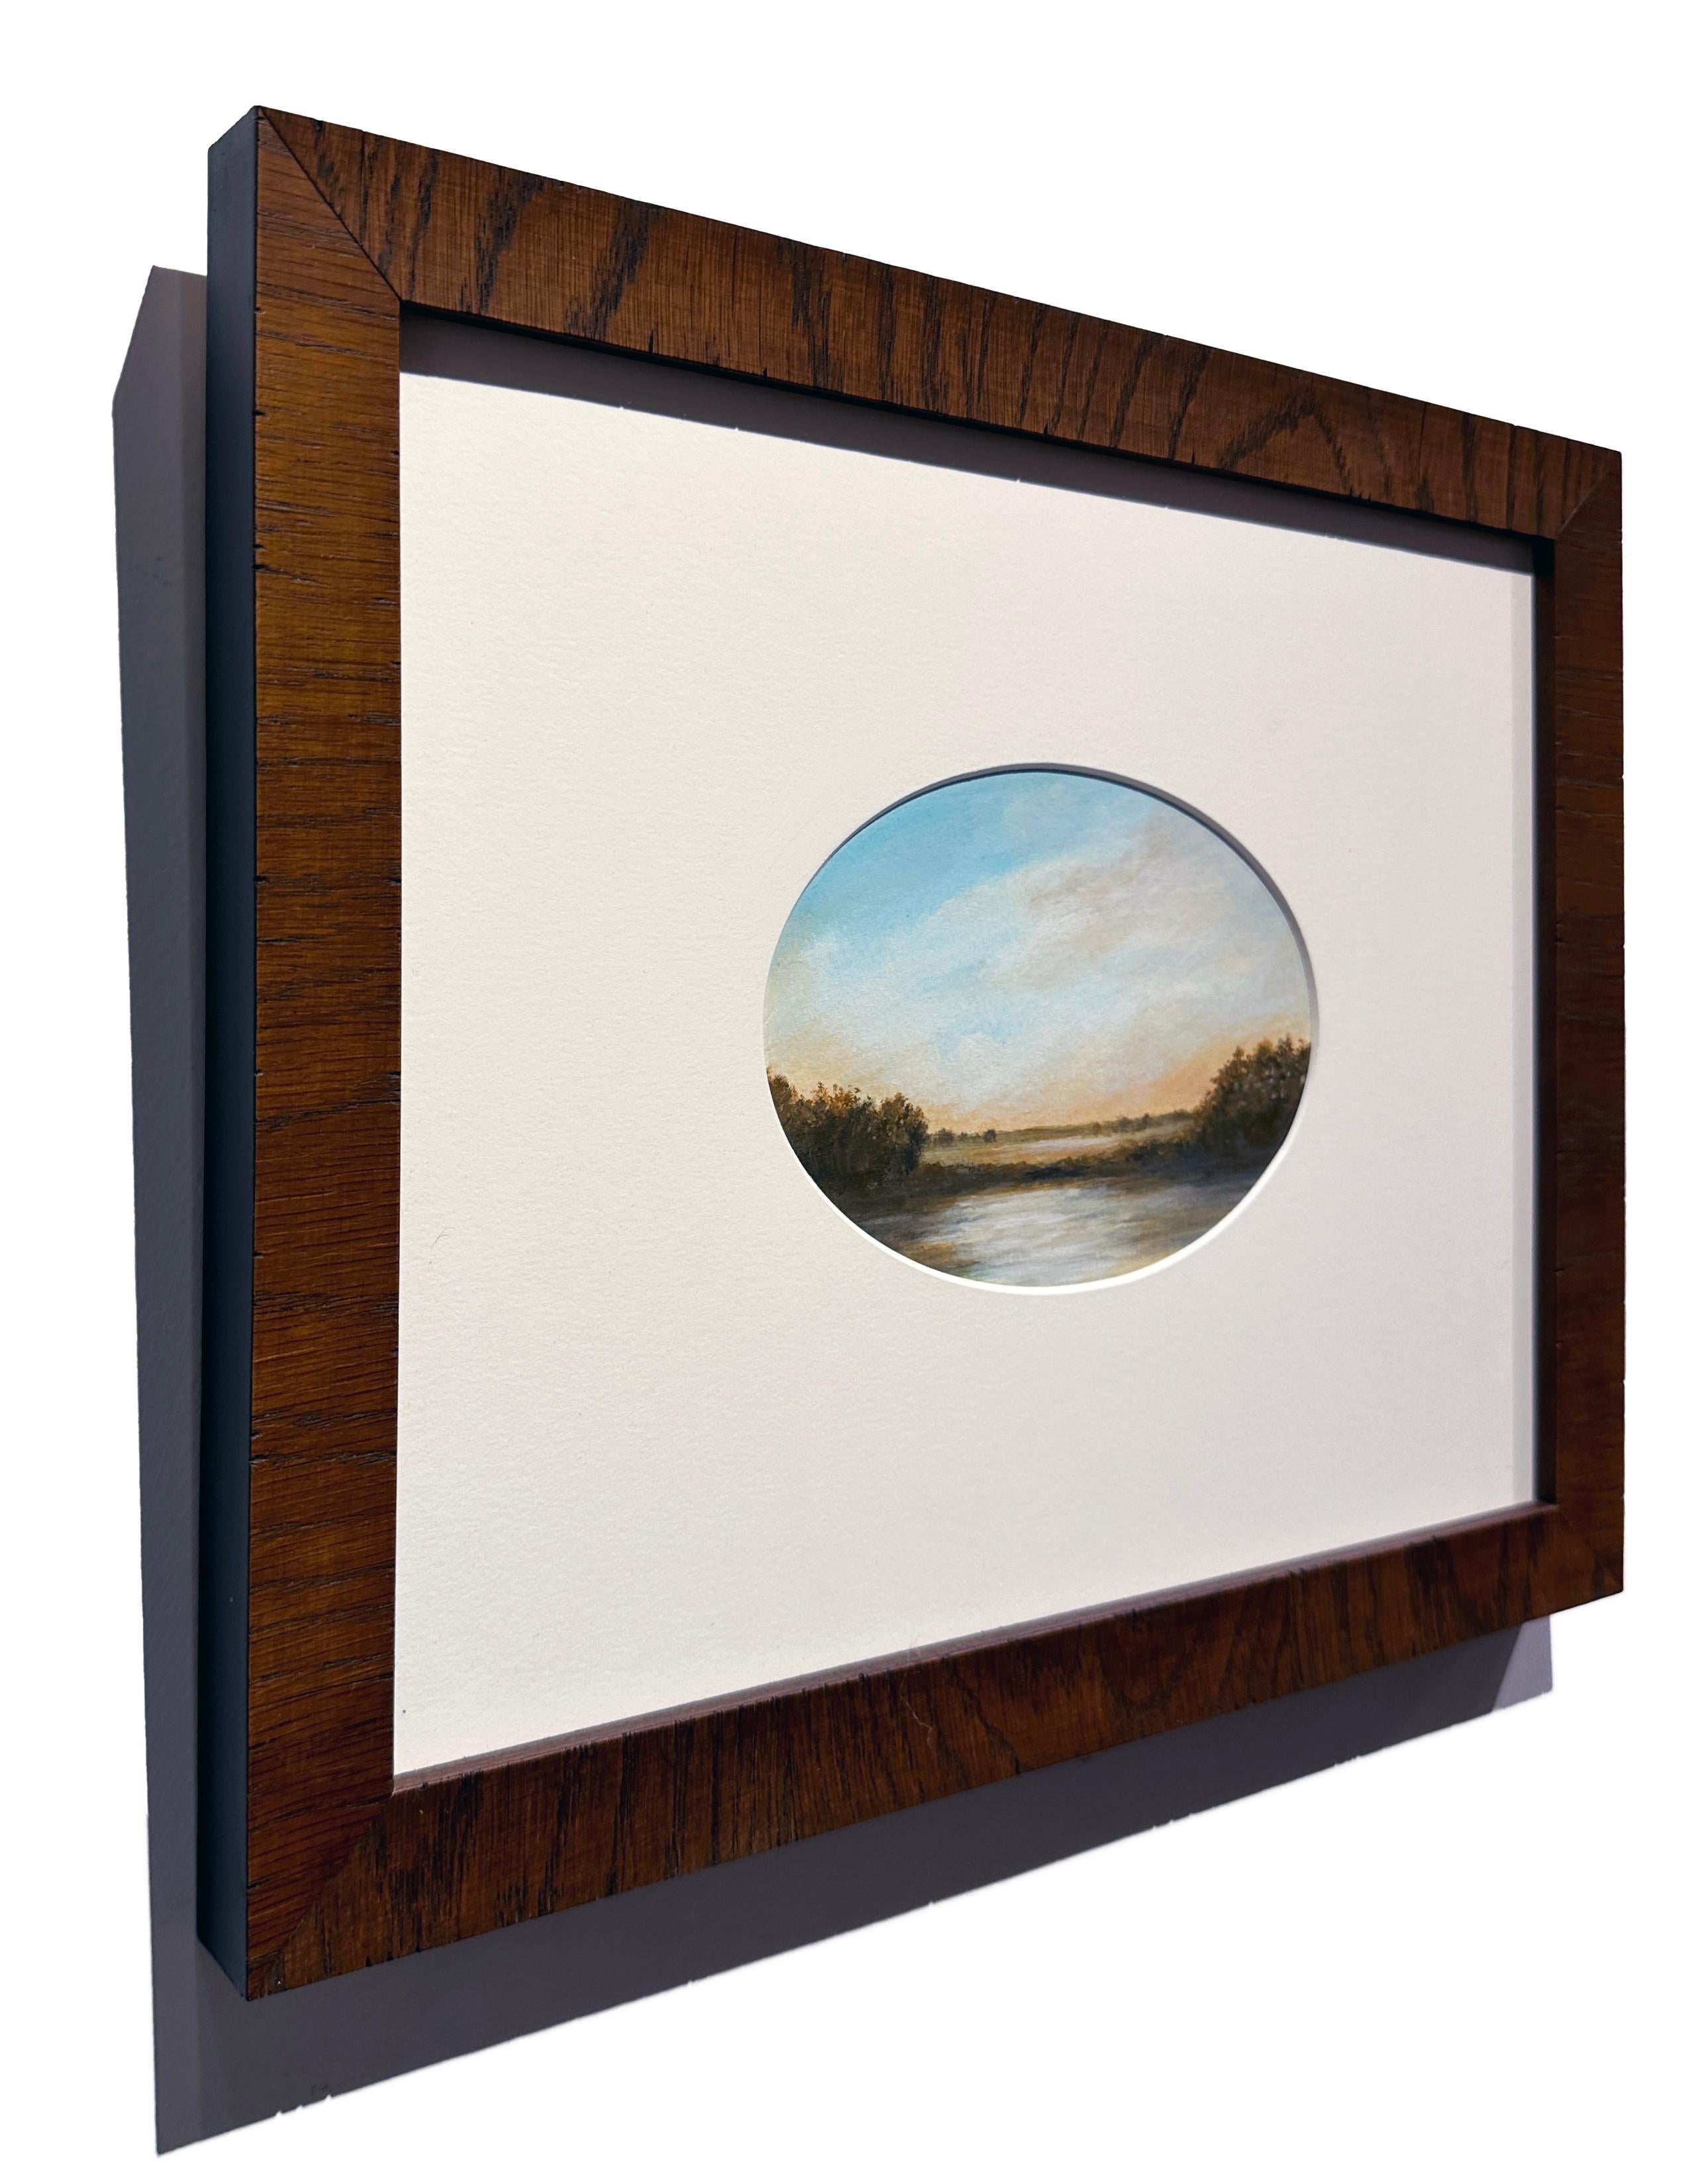 Teich – ruhige Landschaft, Sonne nur am Horizont, wolkengefüllter Himmel (Zeitgenössisch), Painting, von Ahzad Bogosian